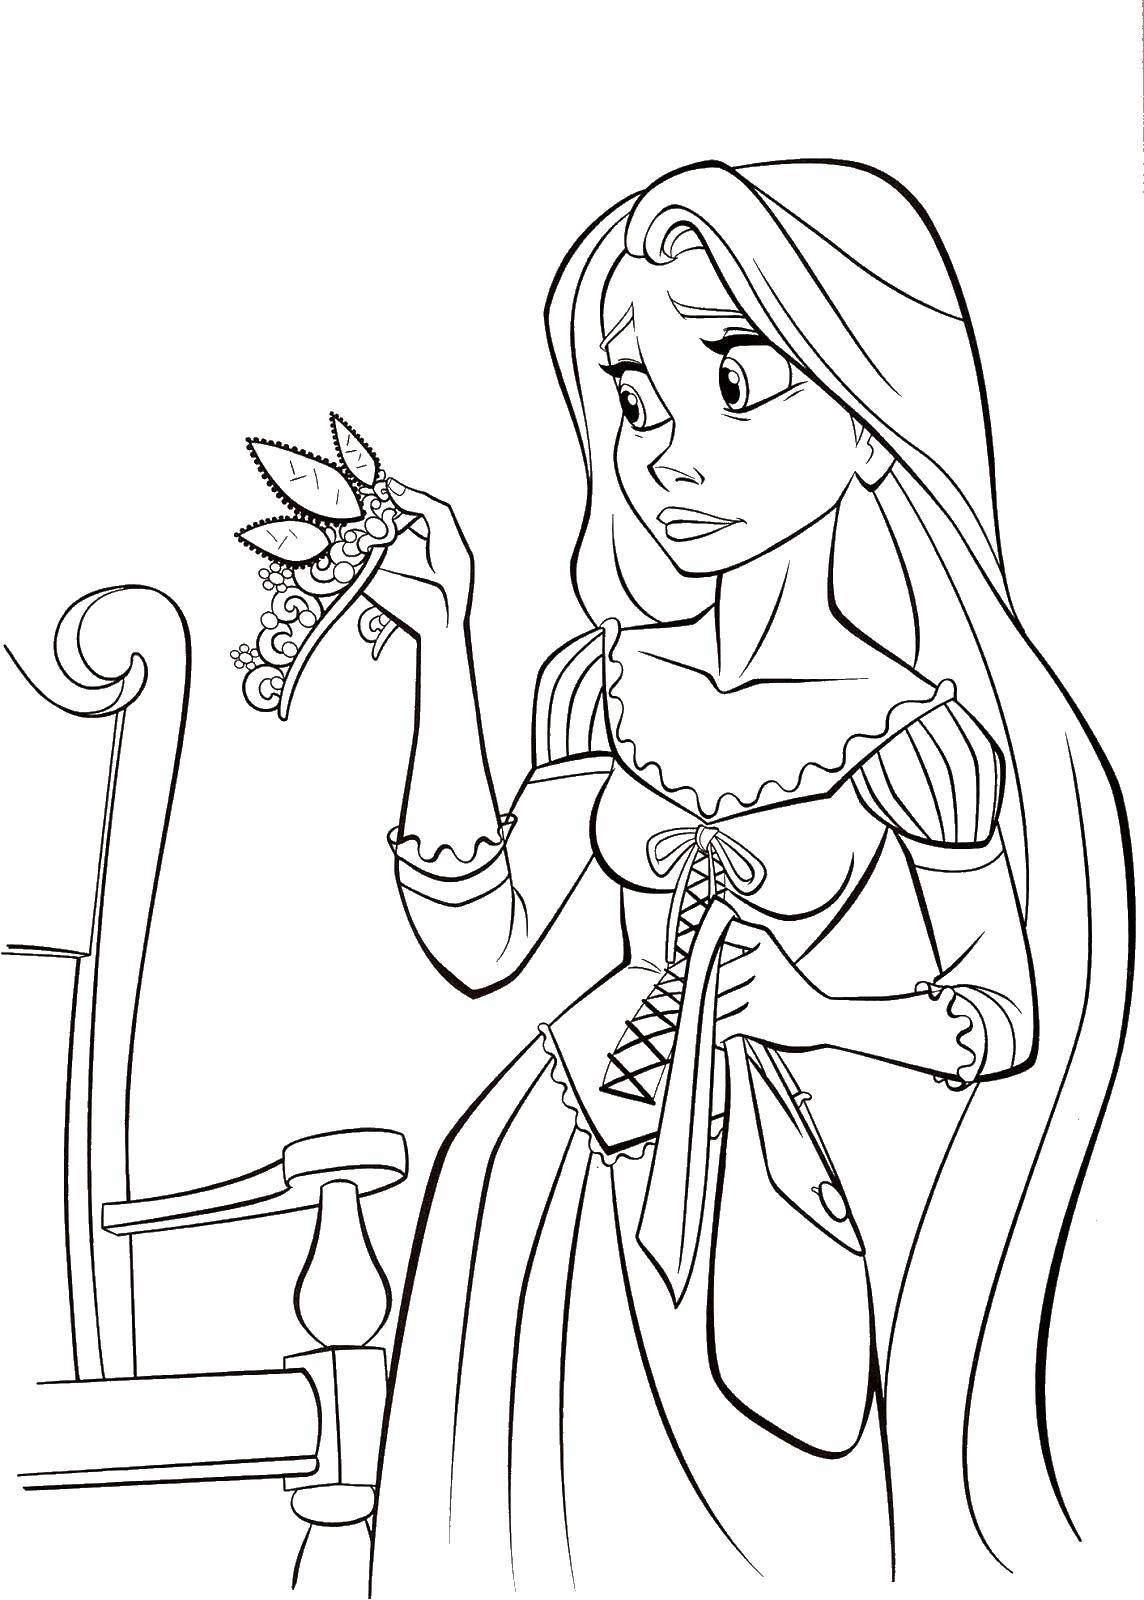 Coloring Rapunzel. Category Disney coloring pages. Tags:  Disney, Rapunzel.